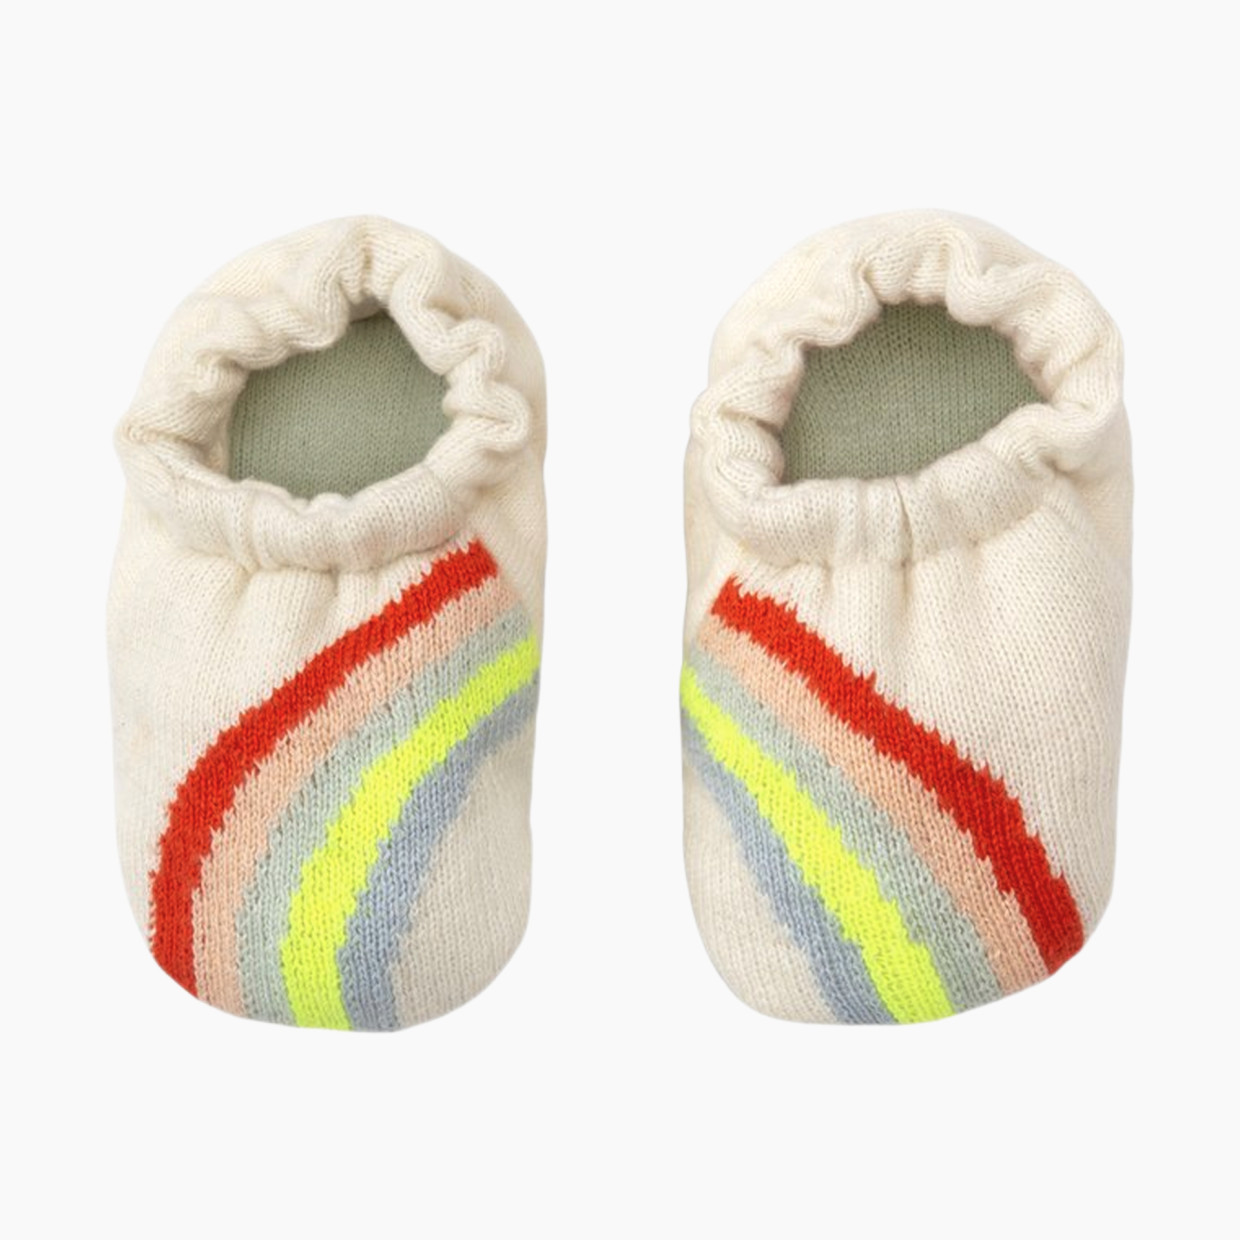 MERI MERI Knit Baby Booties - Rainbow, 0-6 Months.